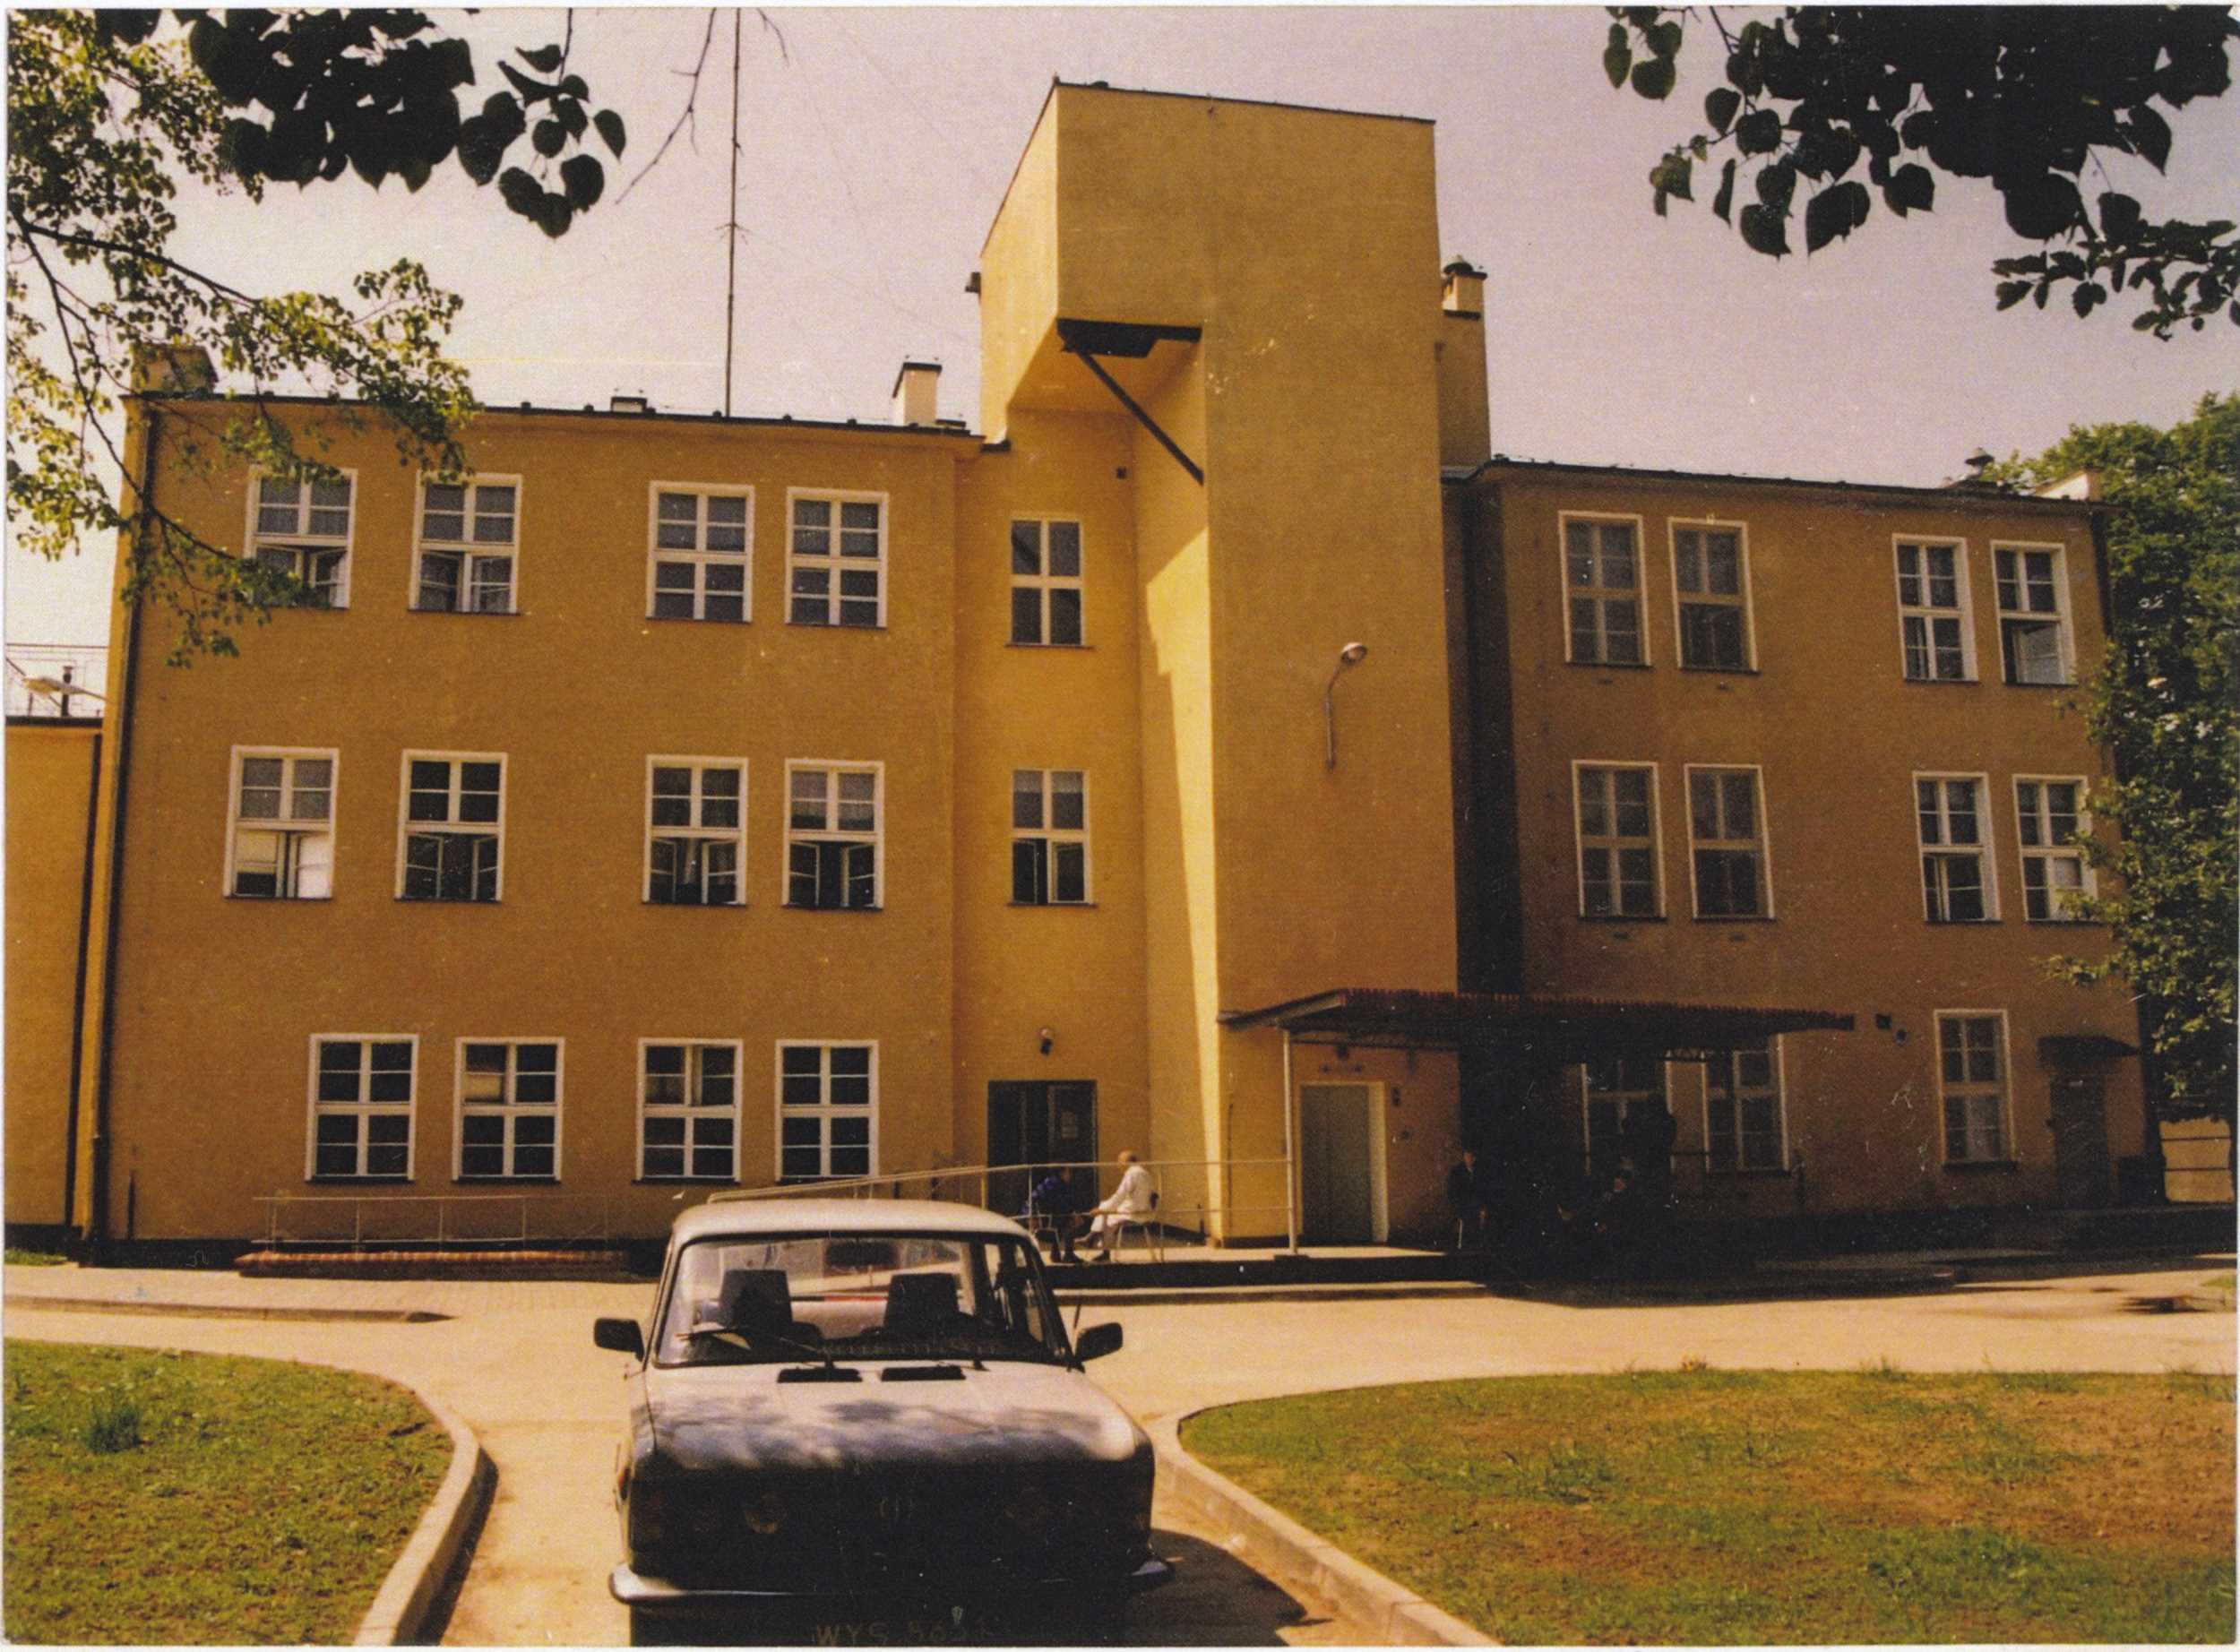 kronika szpital1994 2004 (1)